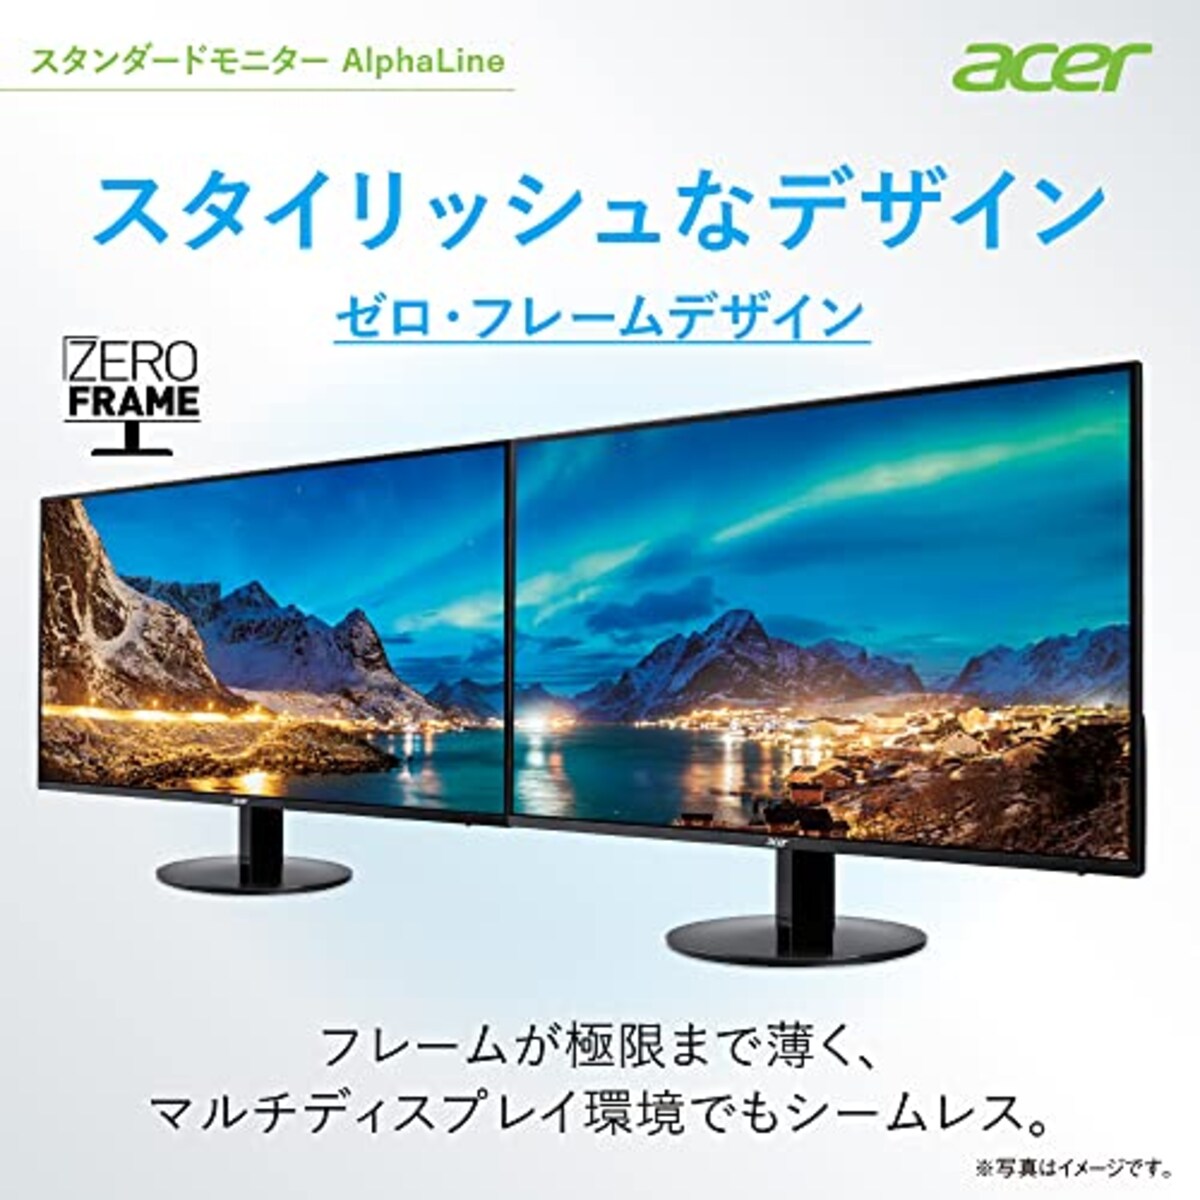  Acer モニター AlphaLine SA241YAbmix 23.8インチ VA 非光沢 フルHD 75Hz 1ms (VRB) HDMI ミニD-Sub 15 広い視野角178° スピーカー内蔵 フリッカーレス ブルーライト軽減 フレームレスデザイン画像4 